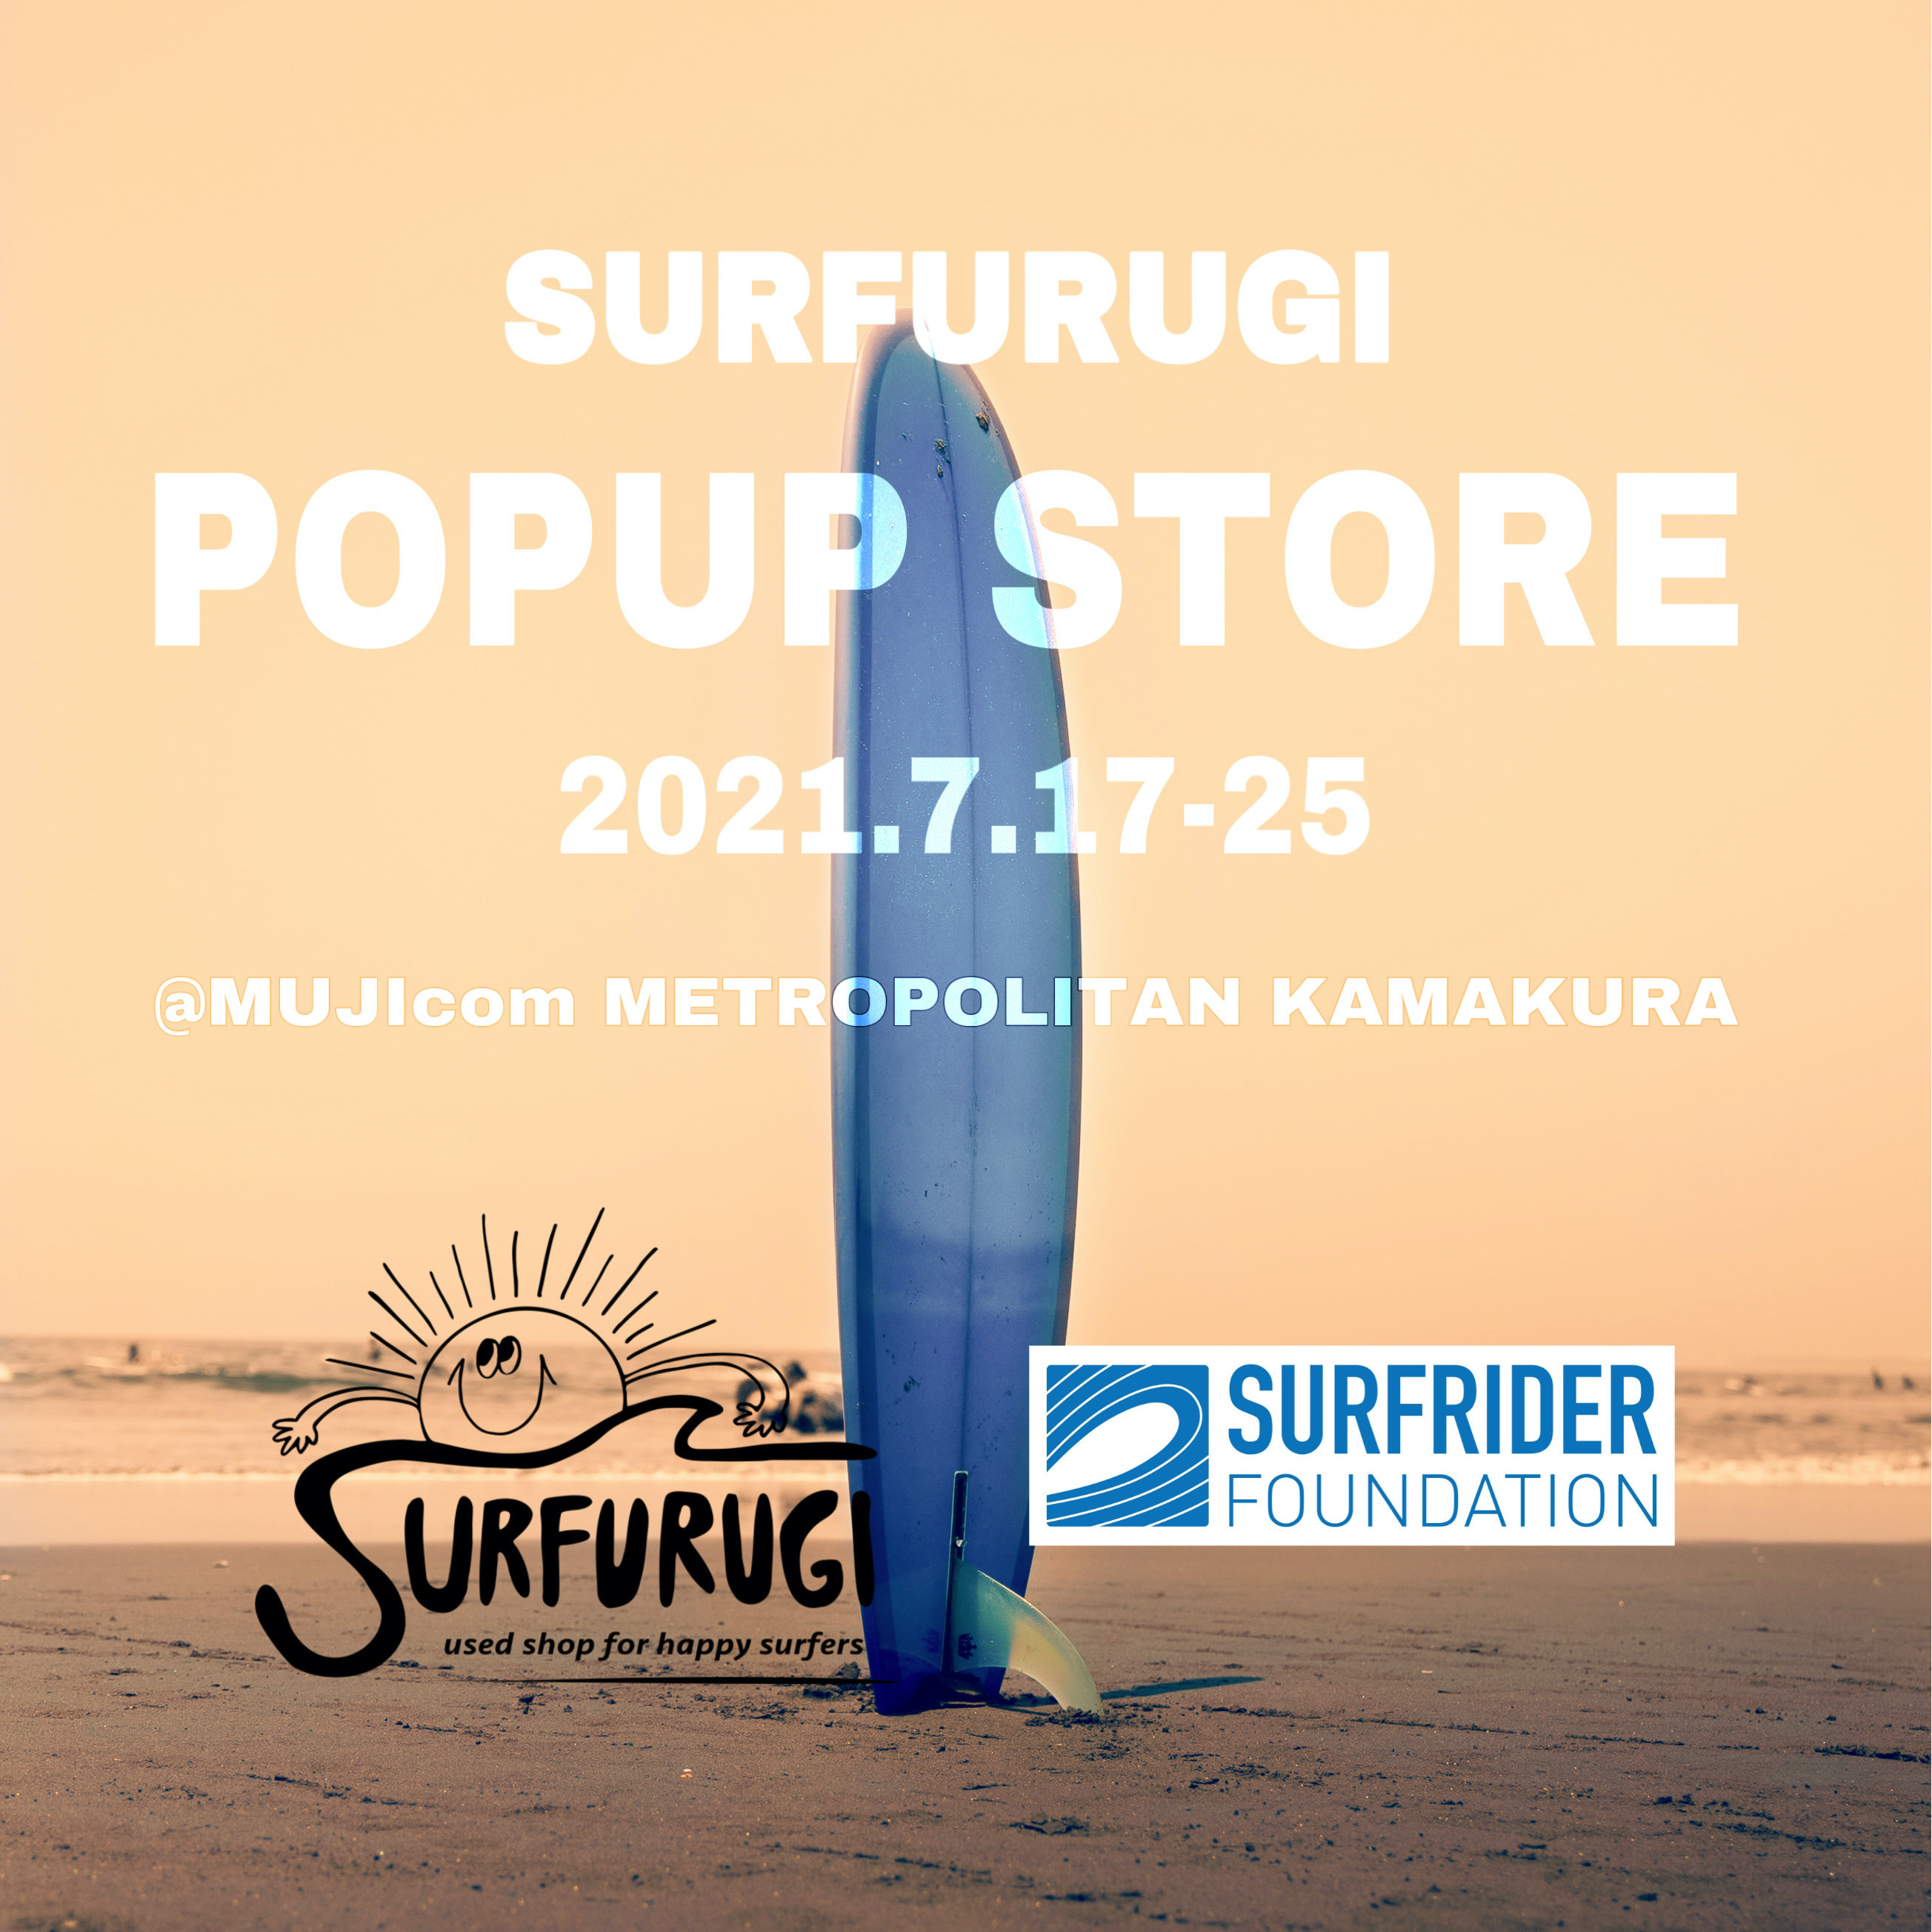 『SURFURUGI』×『SURFRIDER FOUNDATION JAPAN』による期間限定のPOPUP STOREがMUJIcomホテルメトロポリタン鎌倉にOPENのサブ画像1